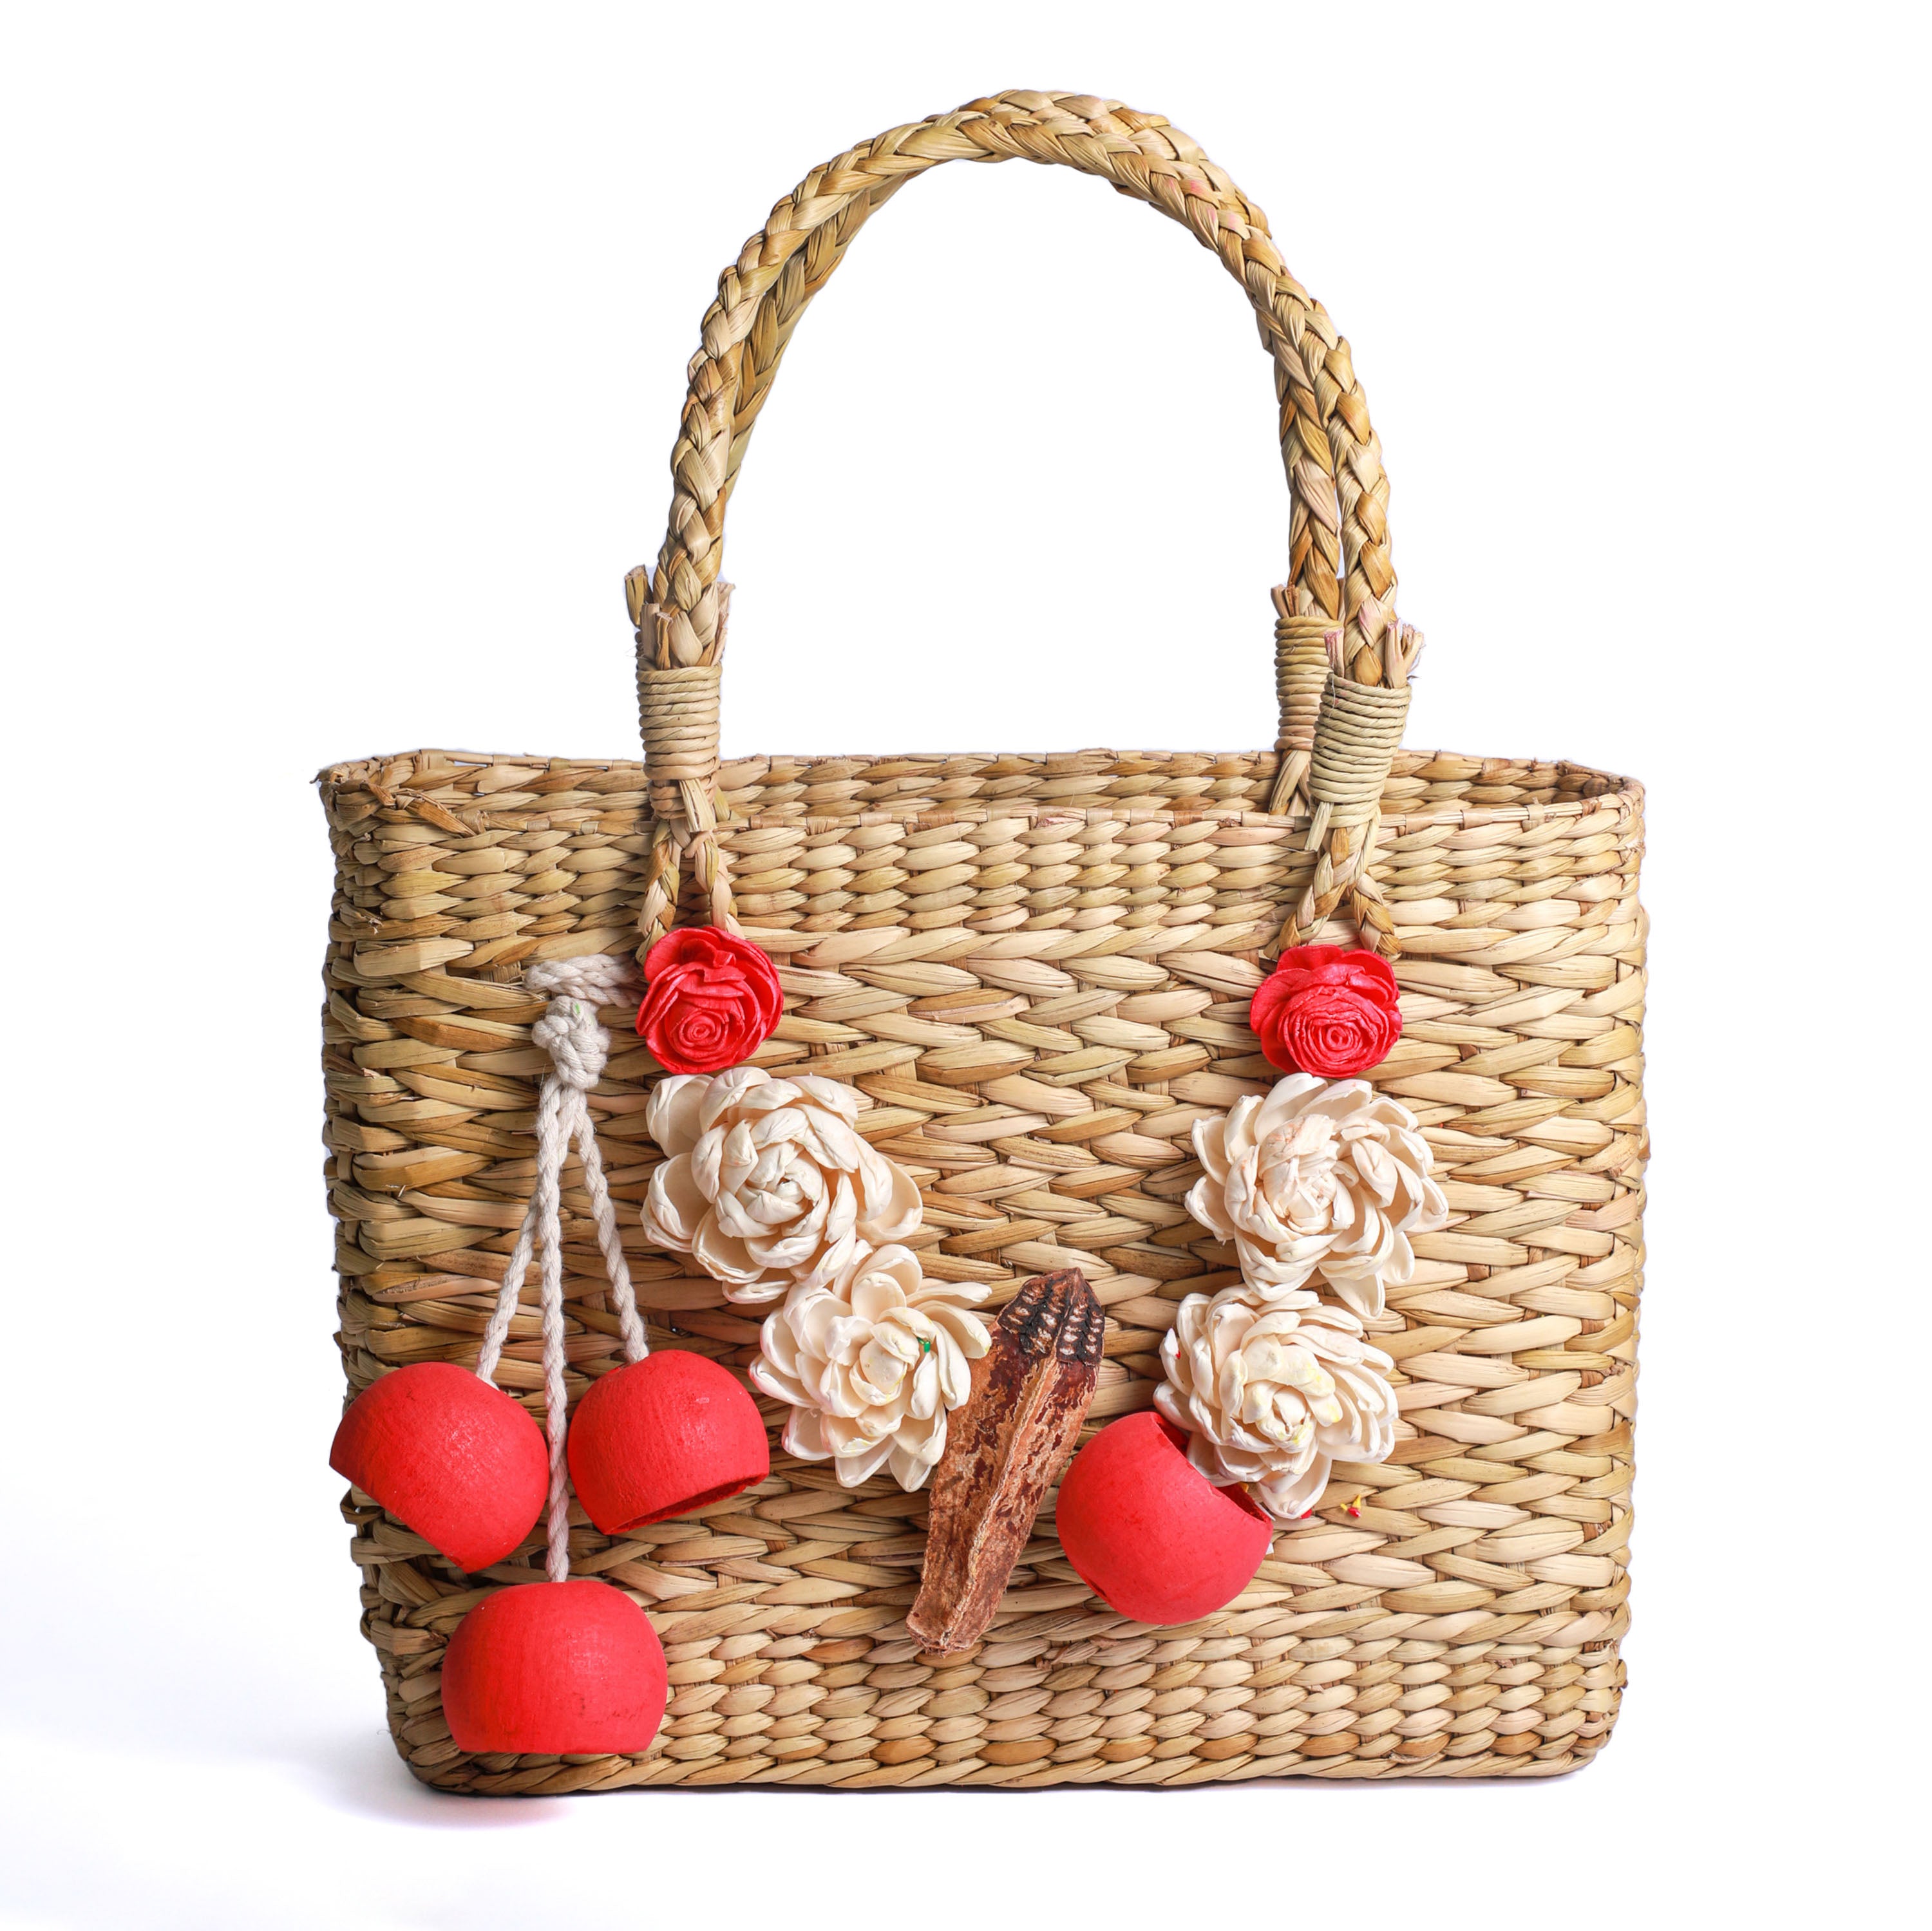 Handmade lady's handbag for return gifting online